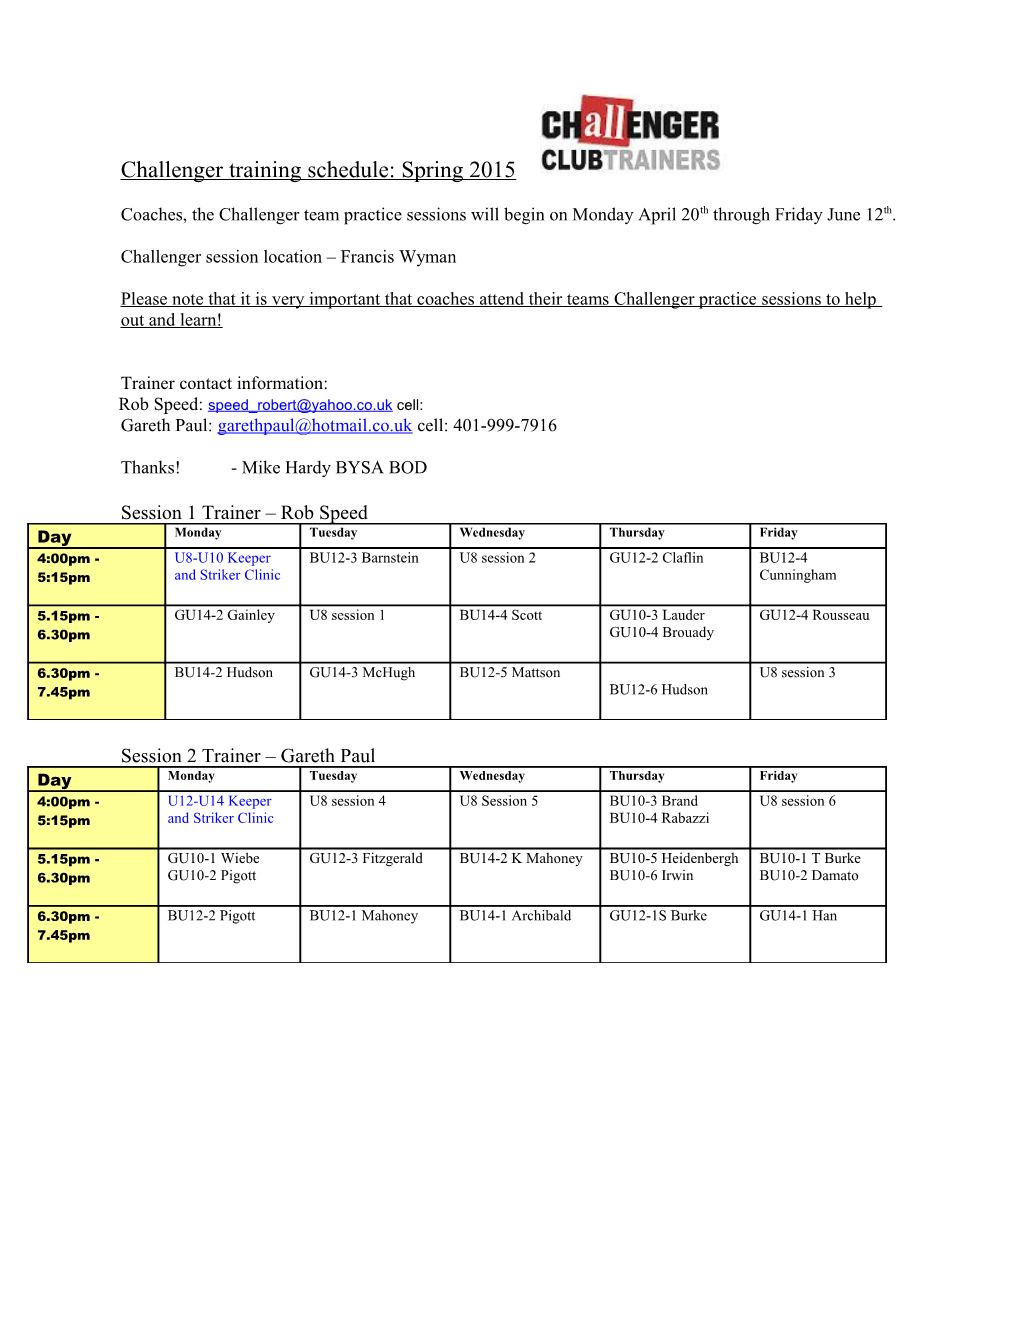 Watertown Spring Training Schedule